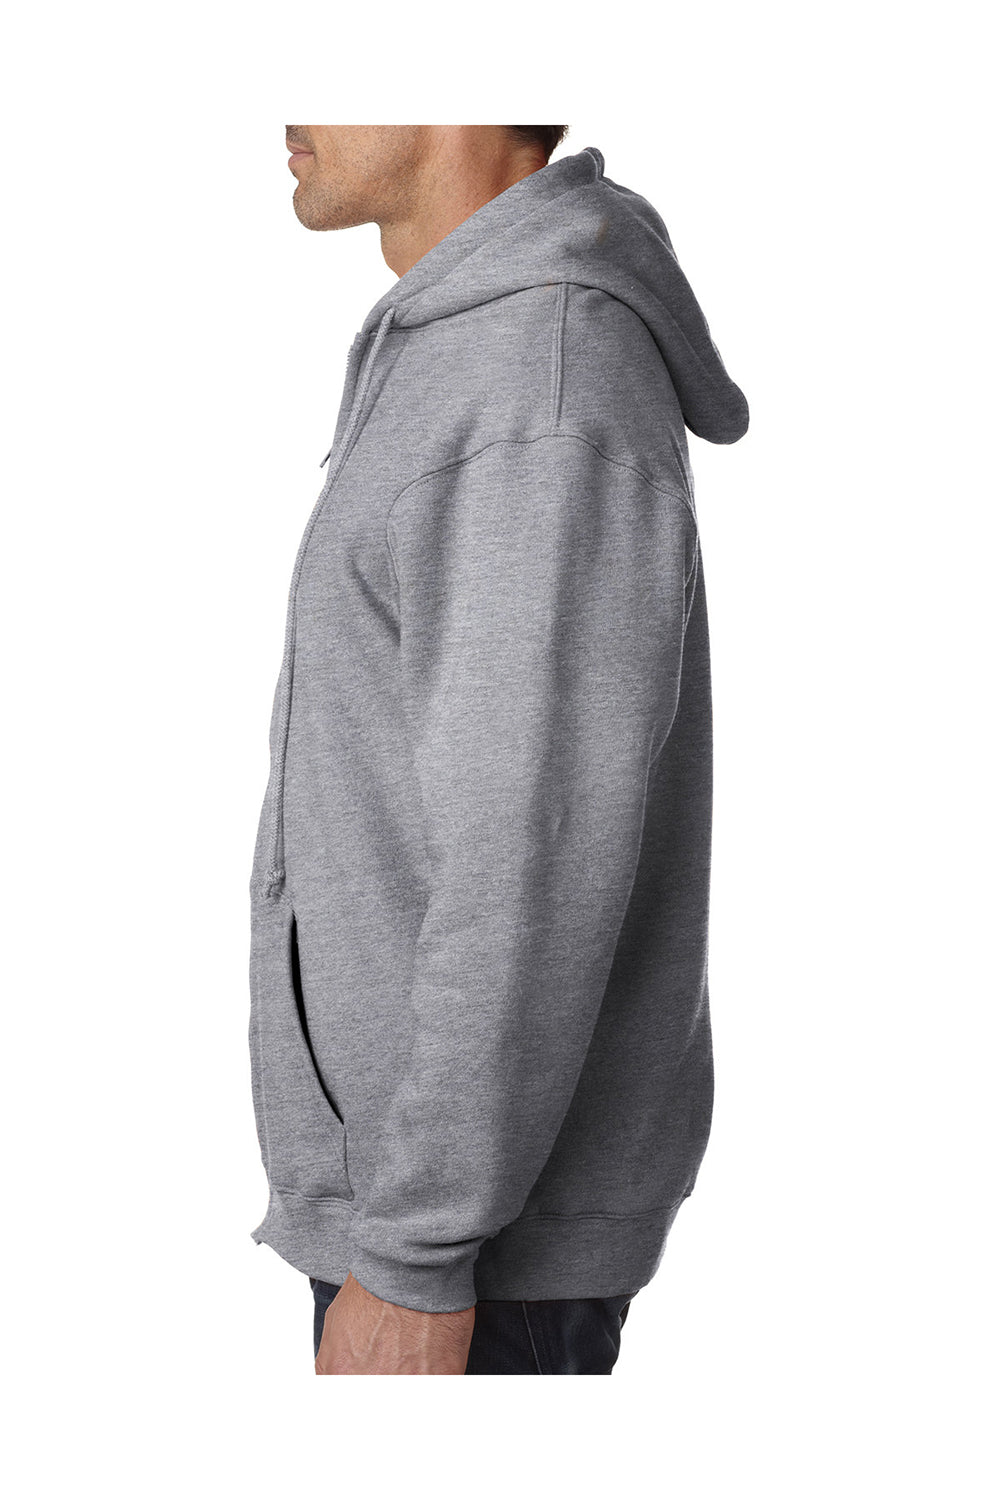 Bayside BA900 Mens USA Made Full Zip Hooded Sweatshirt Hoodie Dark Ash Grey Model Side